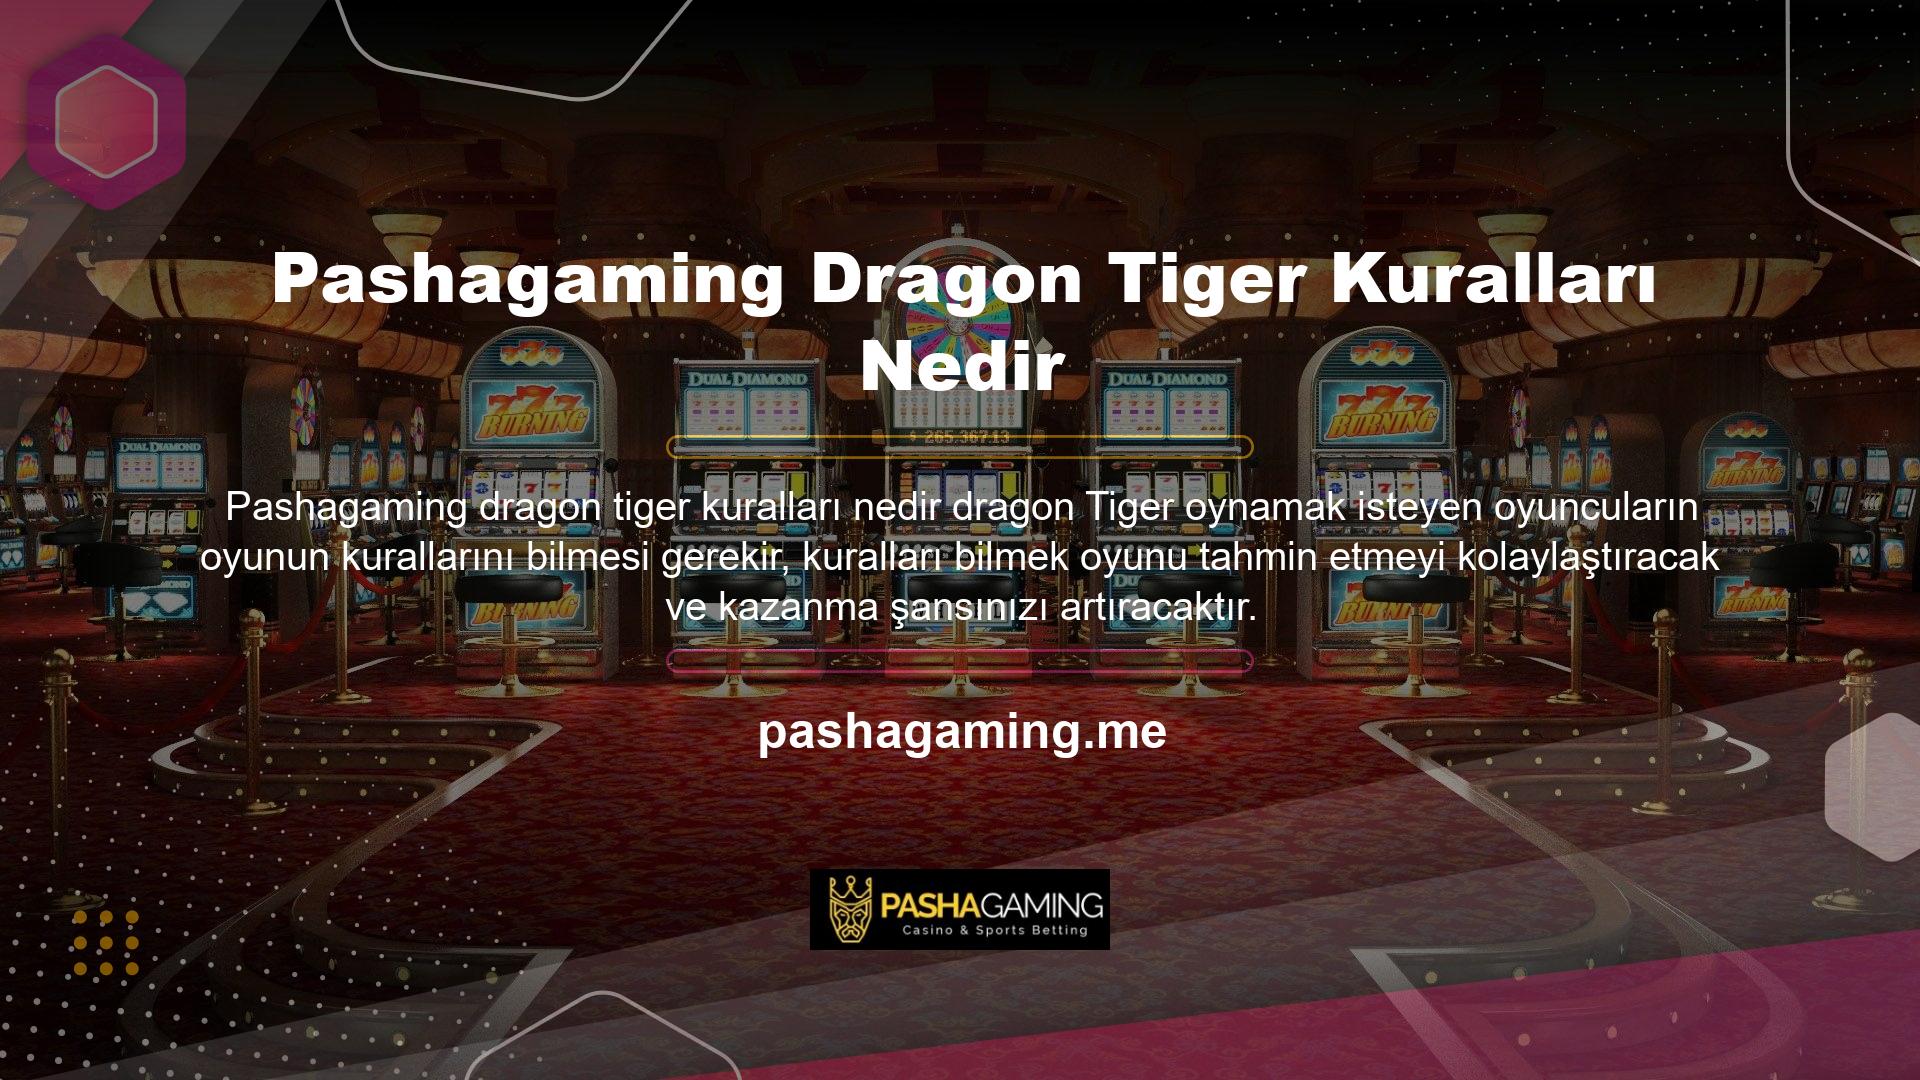 Dragon and Tiger oyununun kuralları şu şekildedir:

	İlk kart her zaman Fang Dragon'a dağıtılır